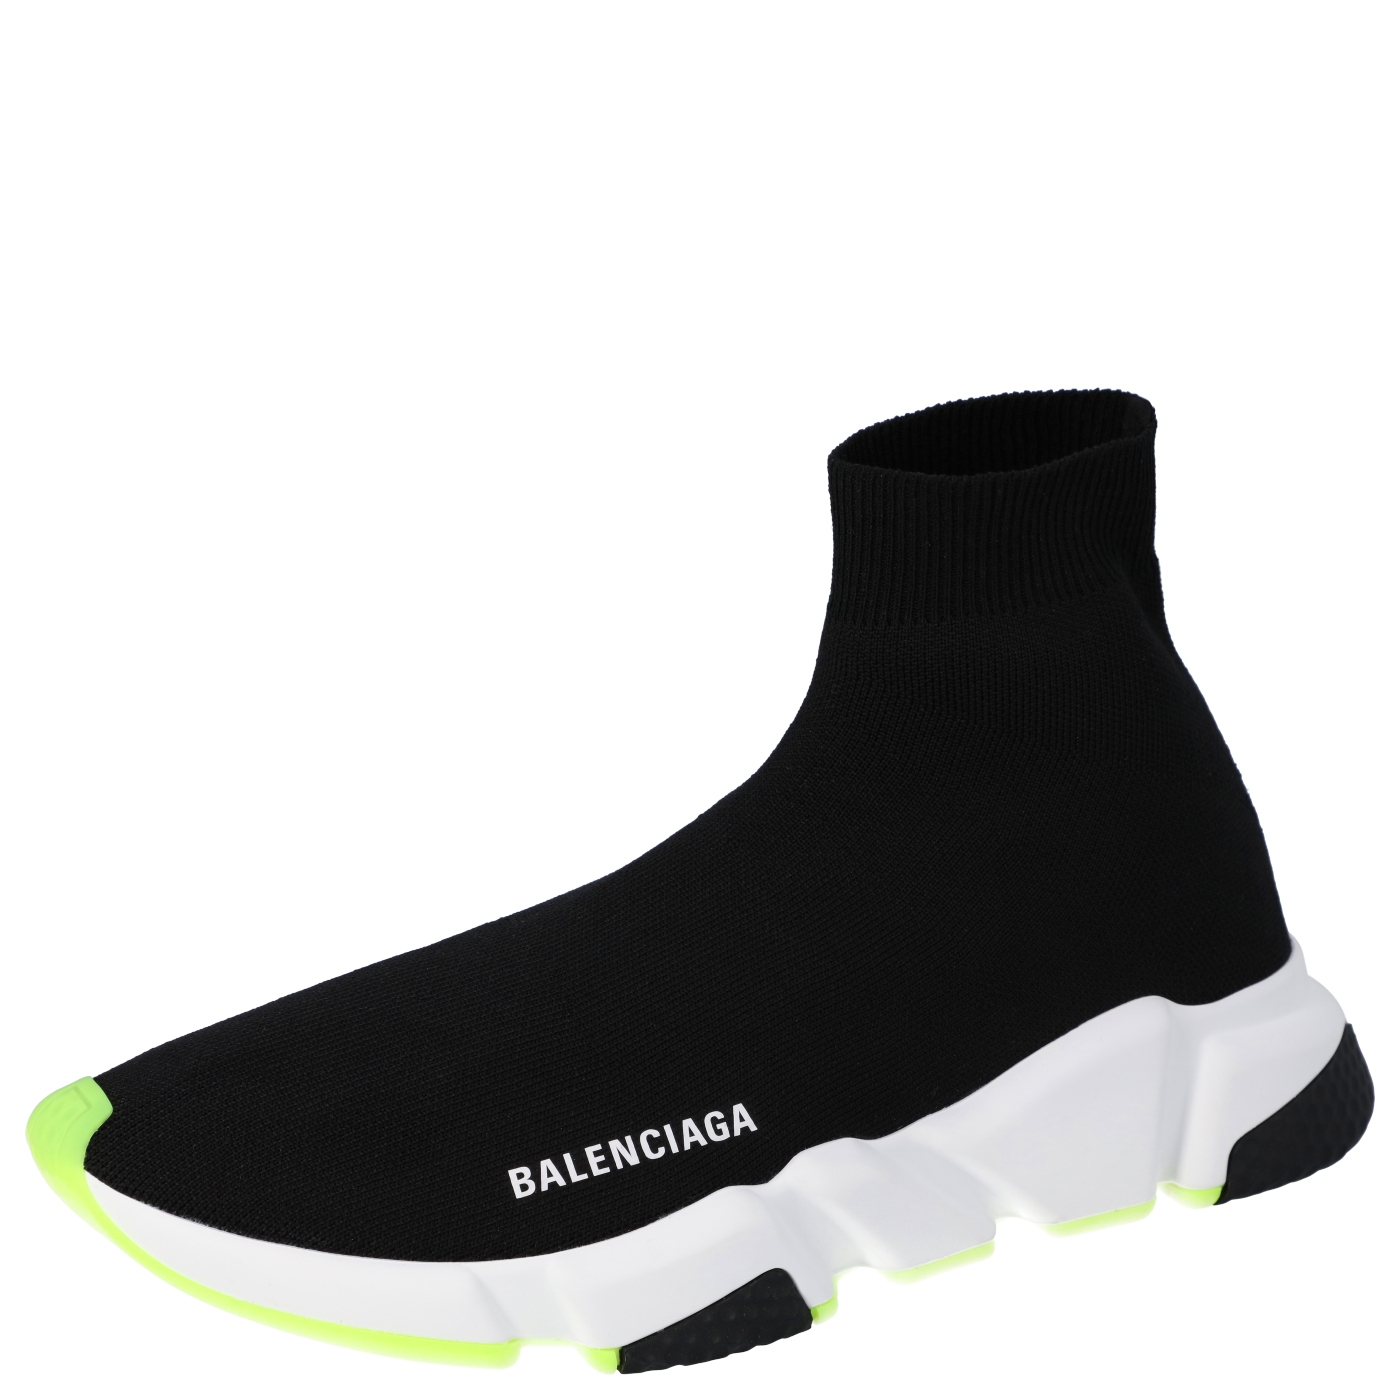 Balenciaga Black Knit Speed High Top Sneakers Size EU 40